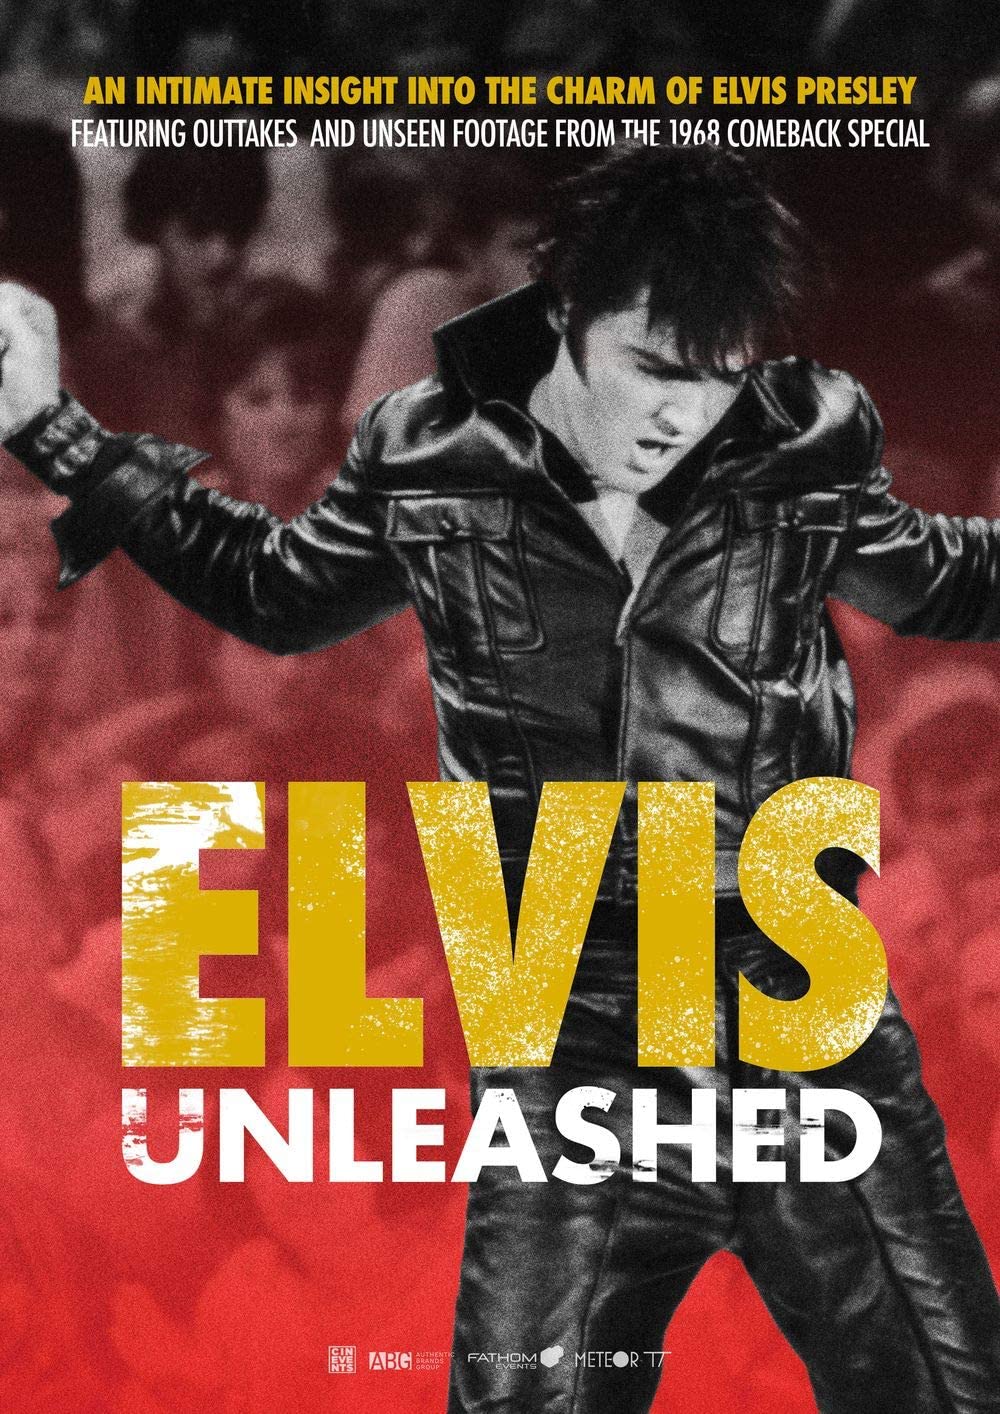 Filmbeschreibung zu Elvis unleashed